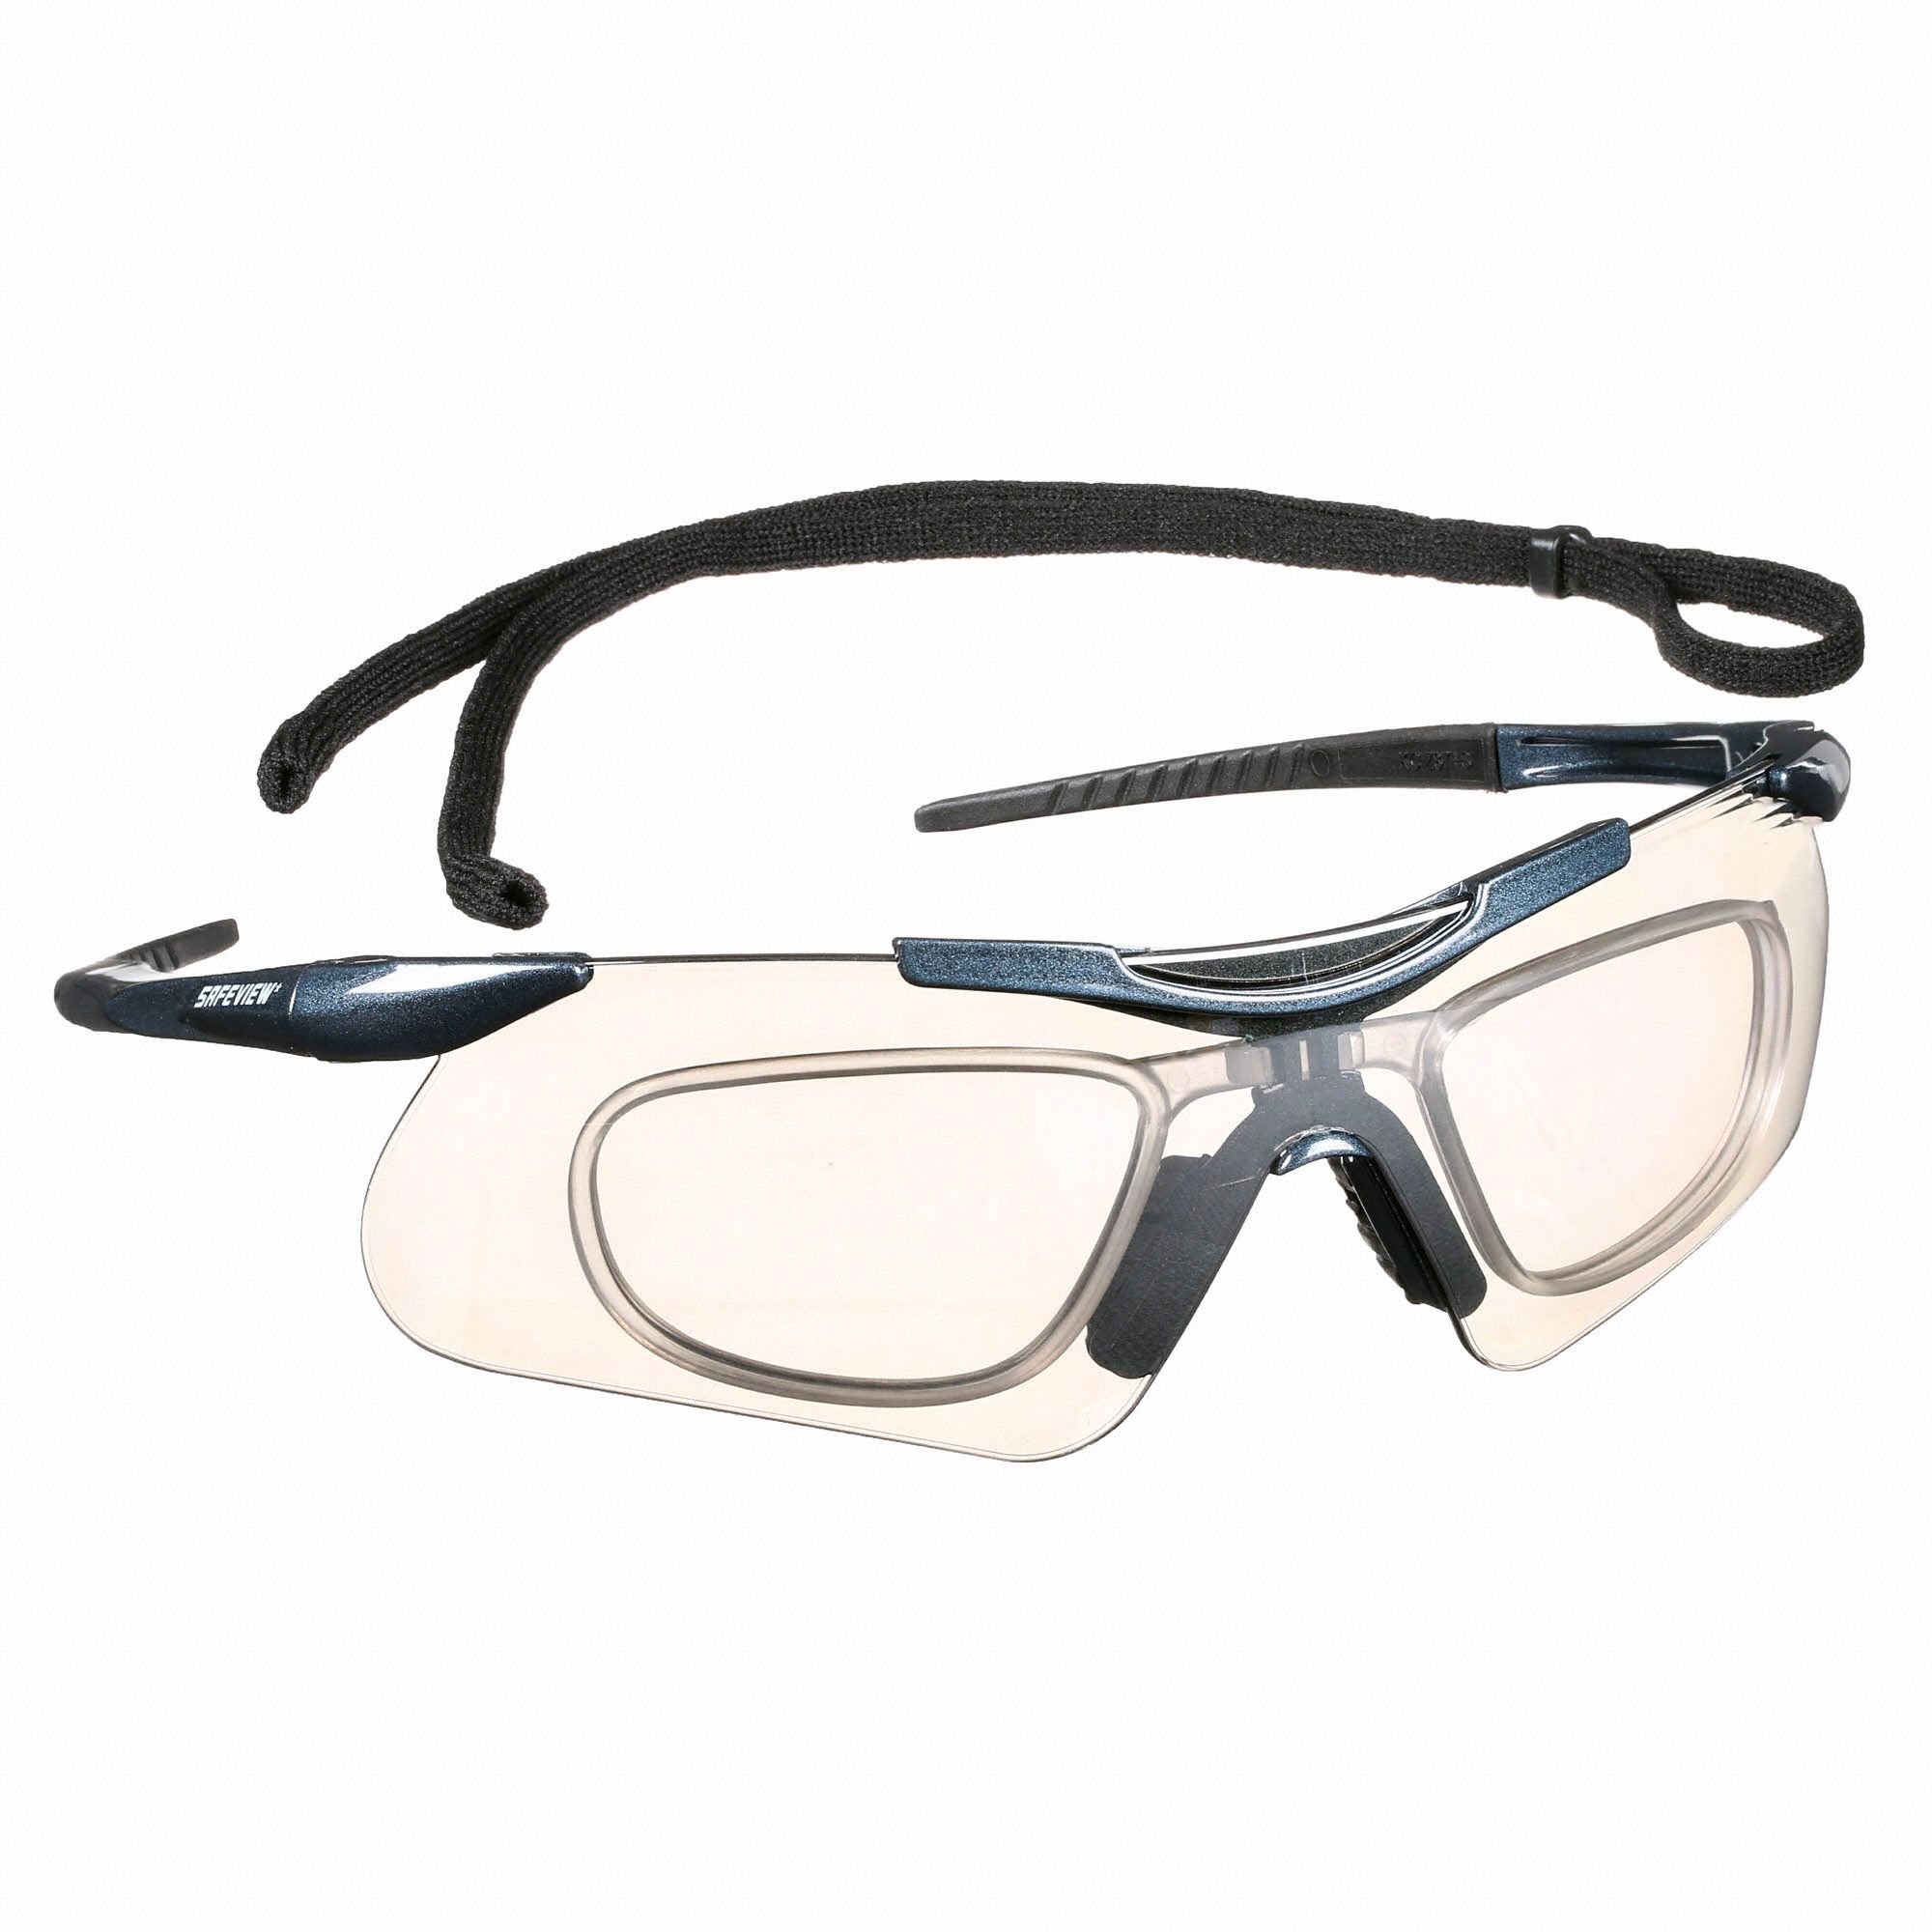 Kleenguard V60 Nemesis Safety Inserts Anti Fog Scratch Resistant Safety Glasses Indoor